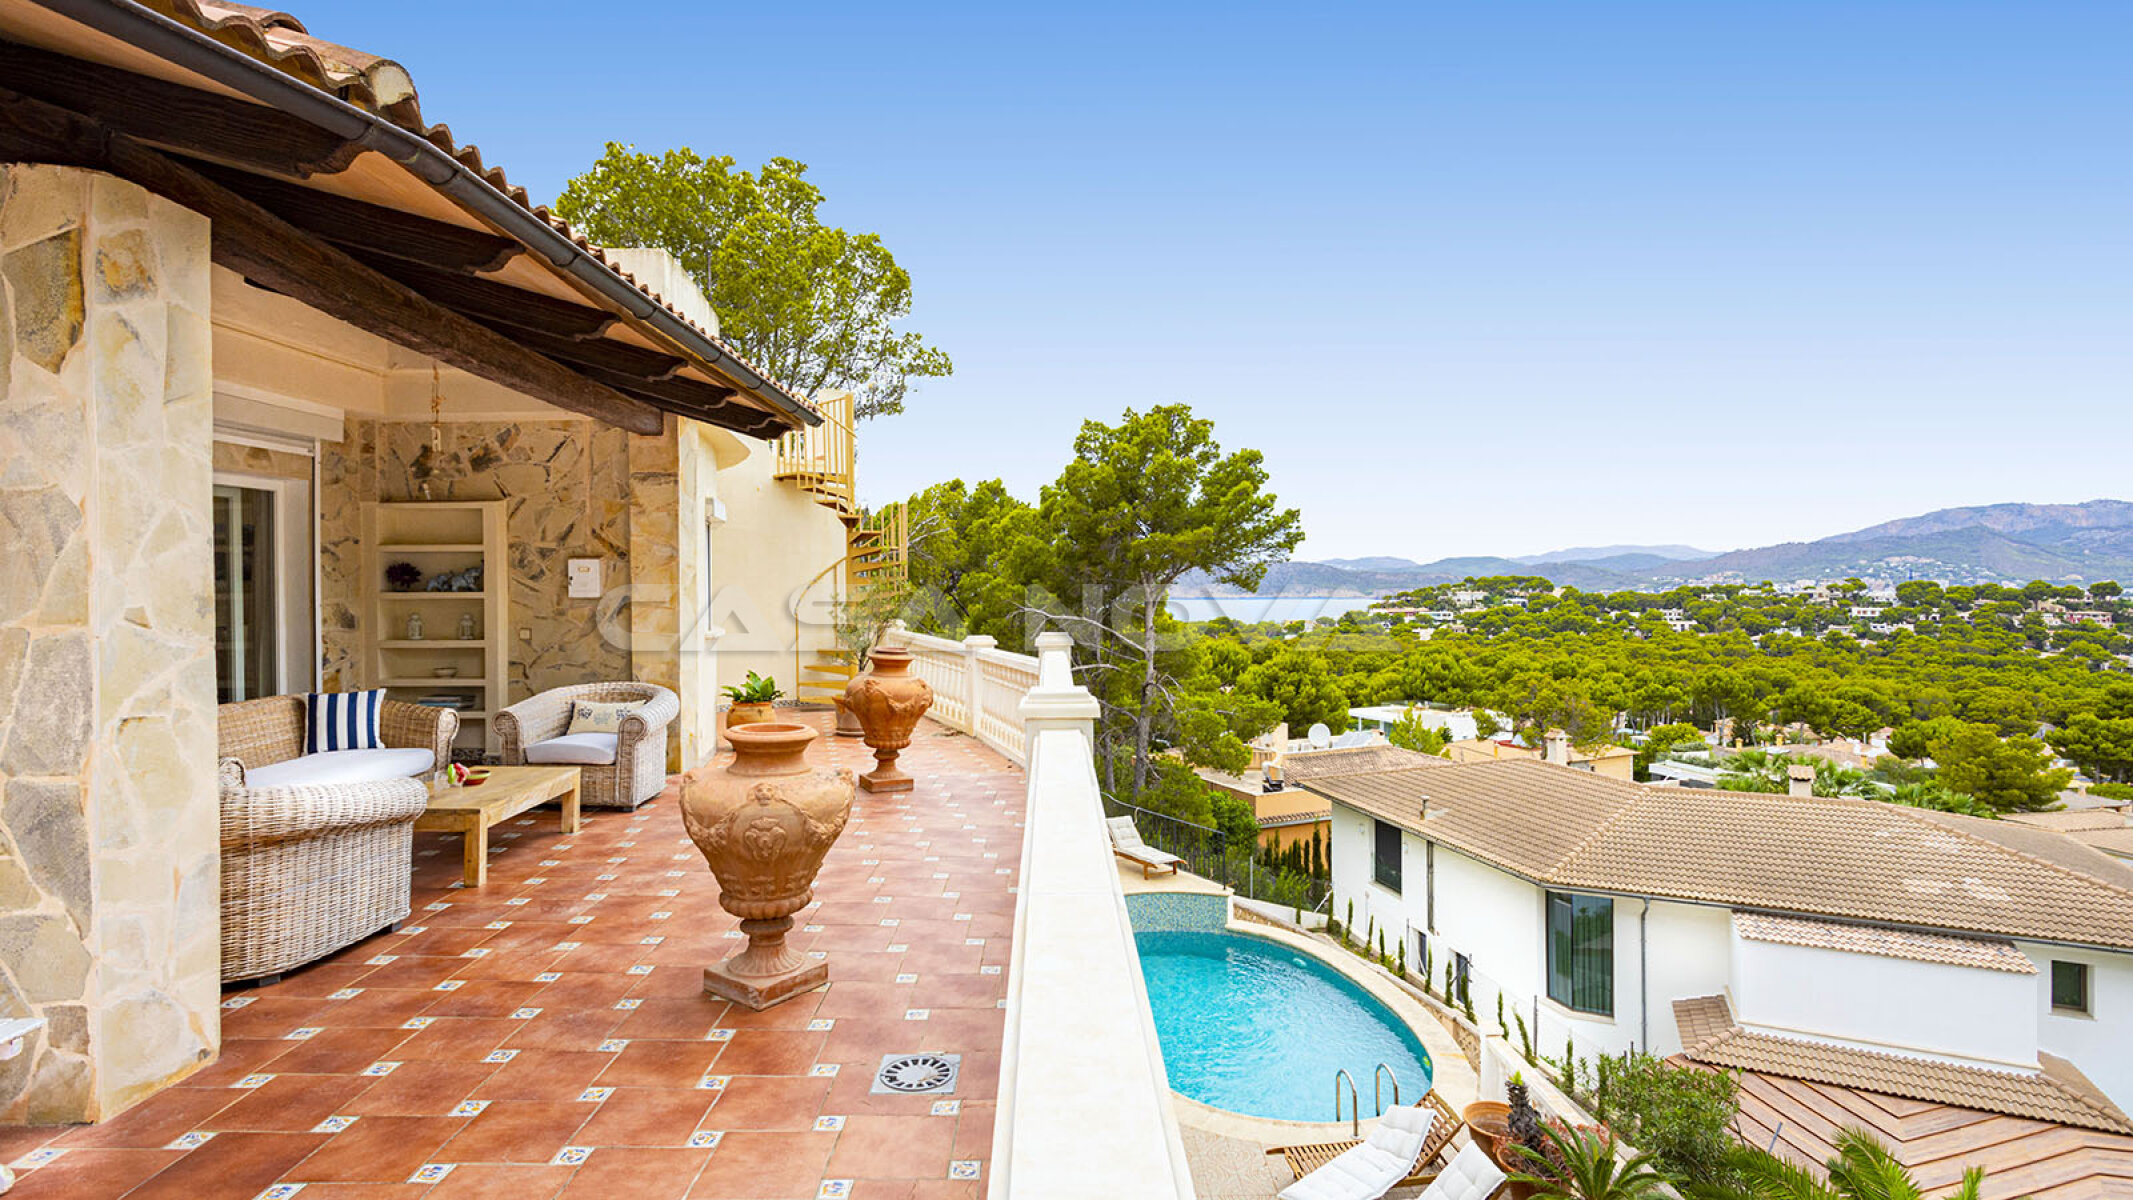 Gran villa en Mallorca con magnficas vistas